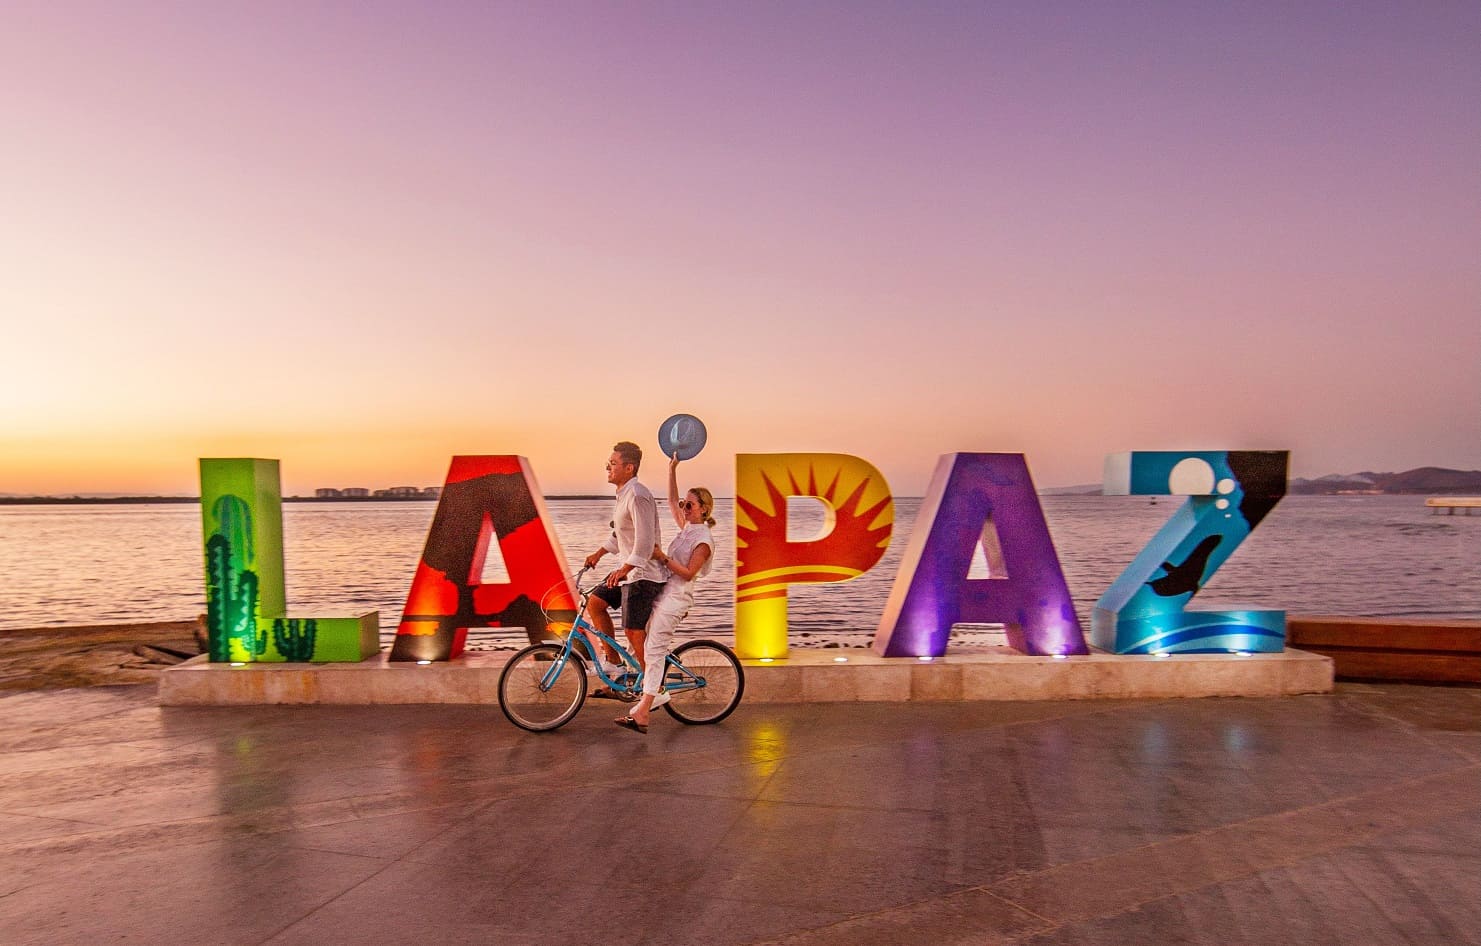 La Paz, BCS, renueva su imagen de promoción turística